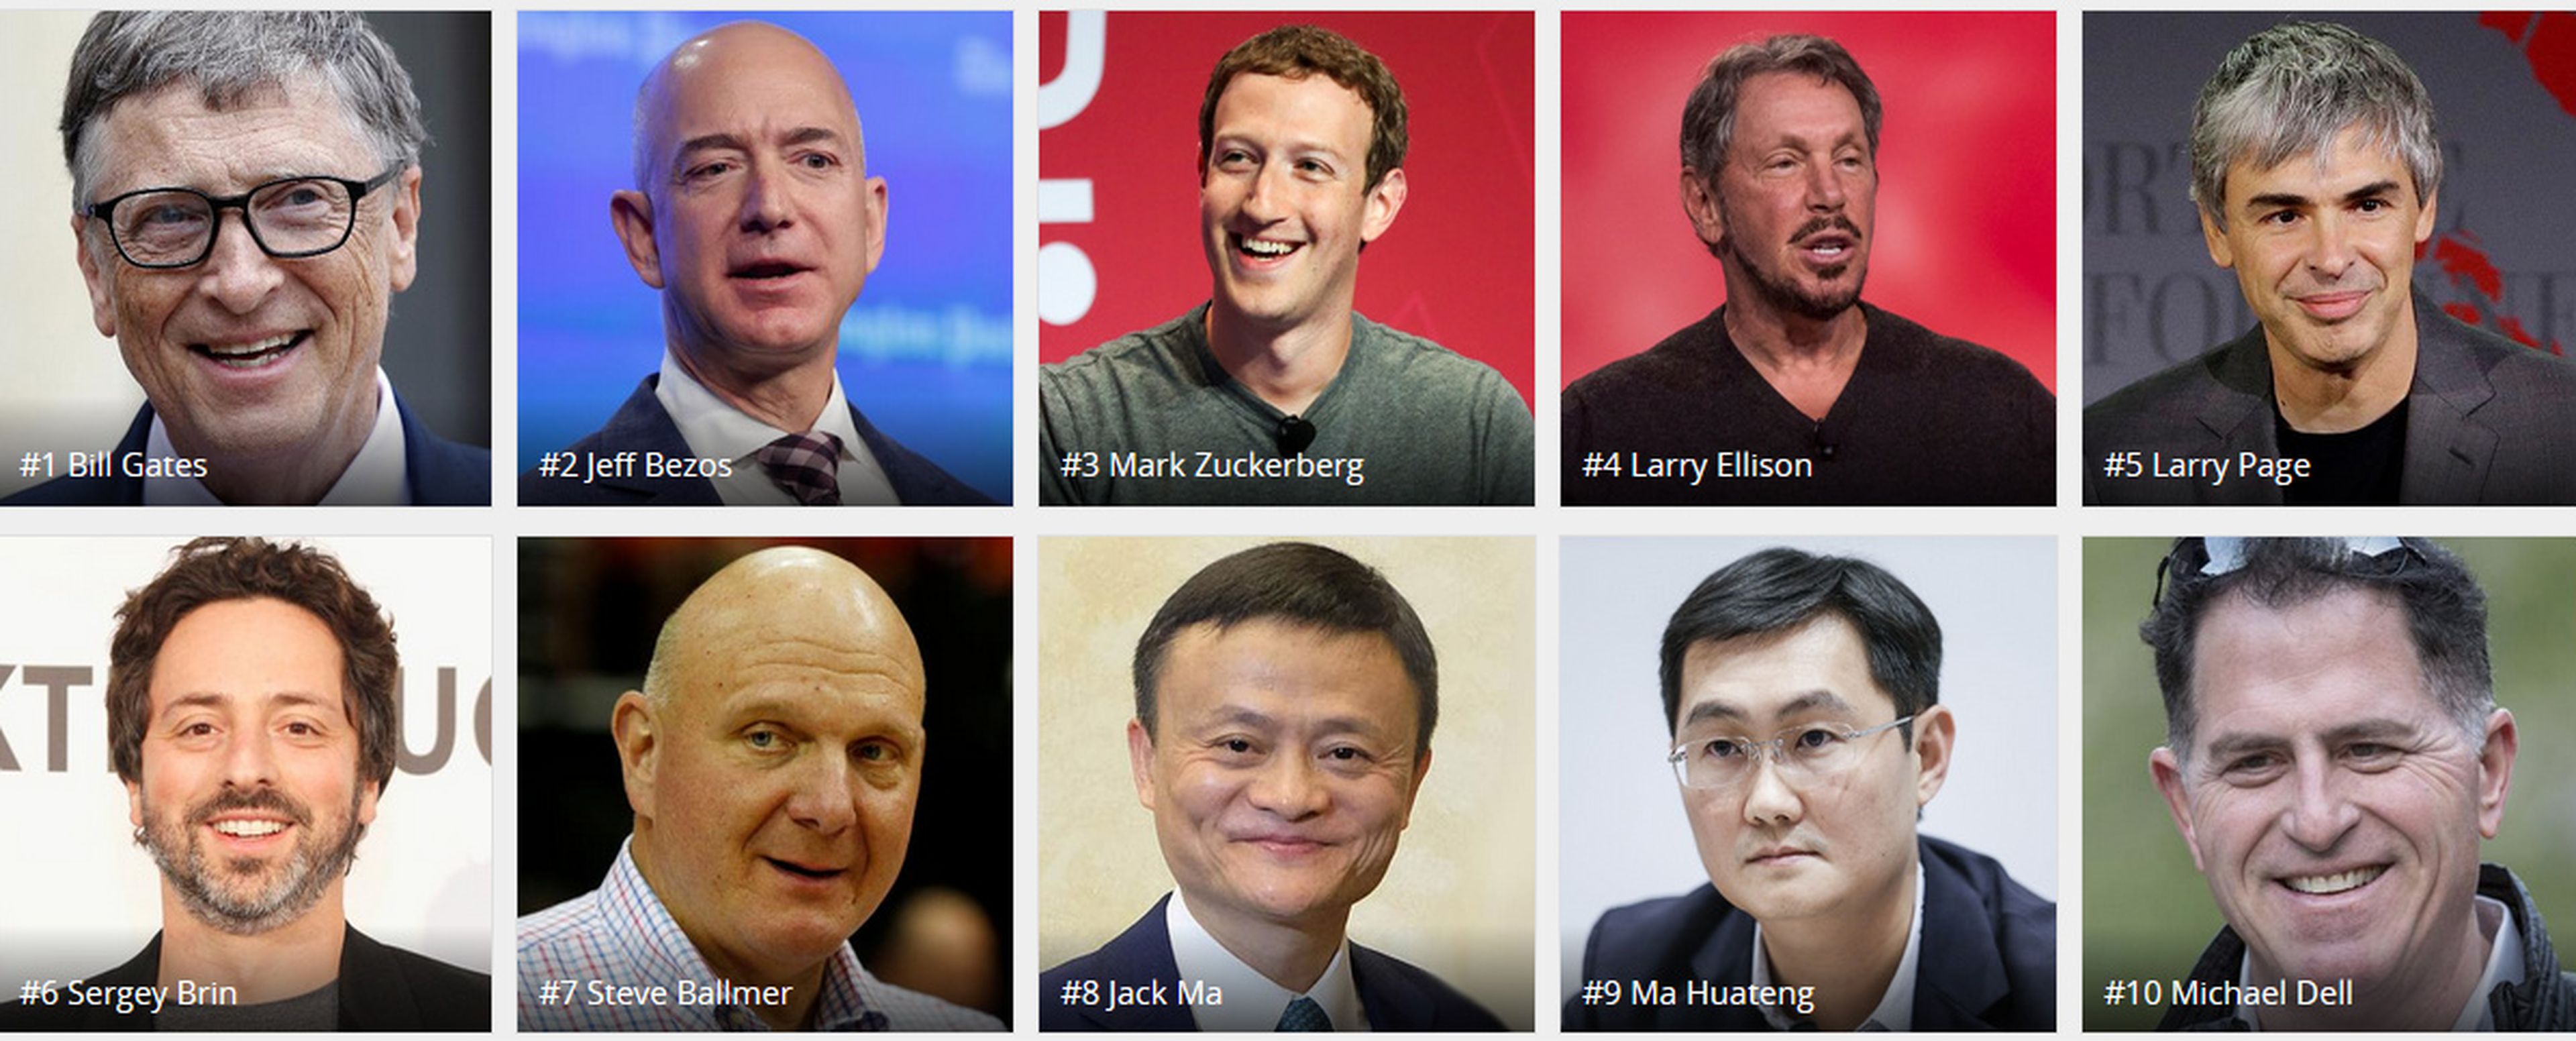 Список самых знаменитых богатых людей